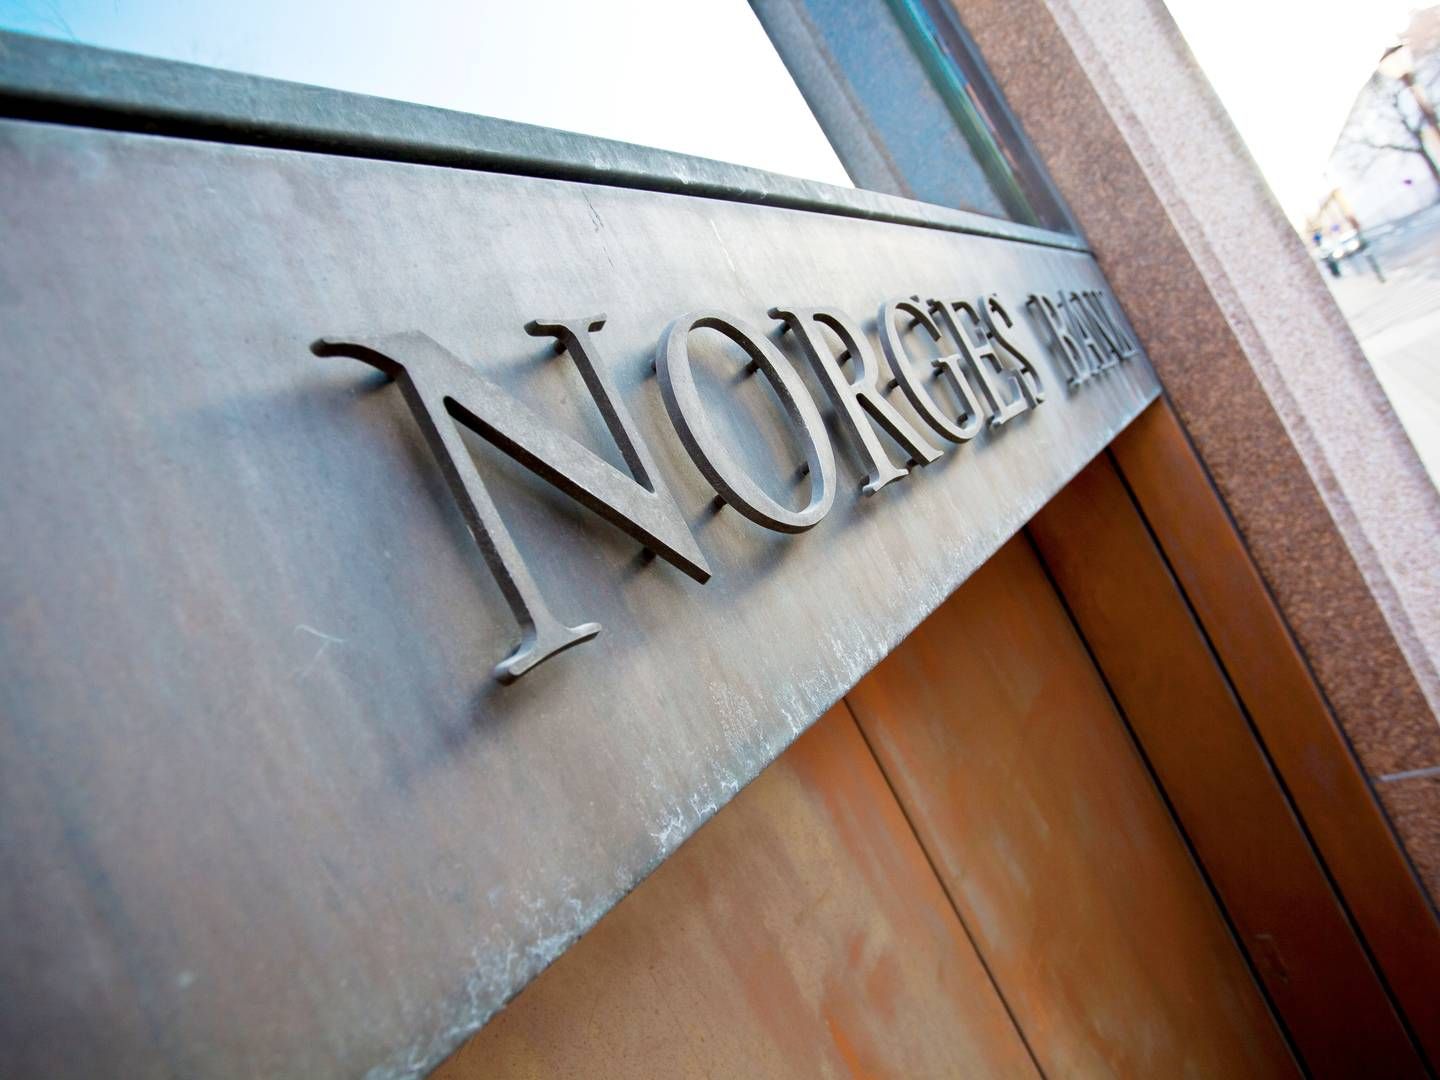 Renteløft i den norske centralbank, Norges Bank, har hjulpet landets banker. | Foto: Pr / Norges Bank